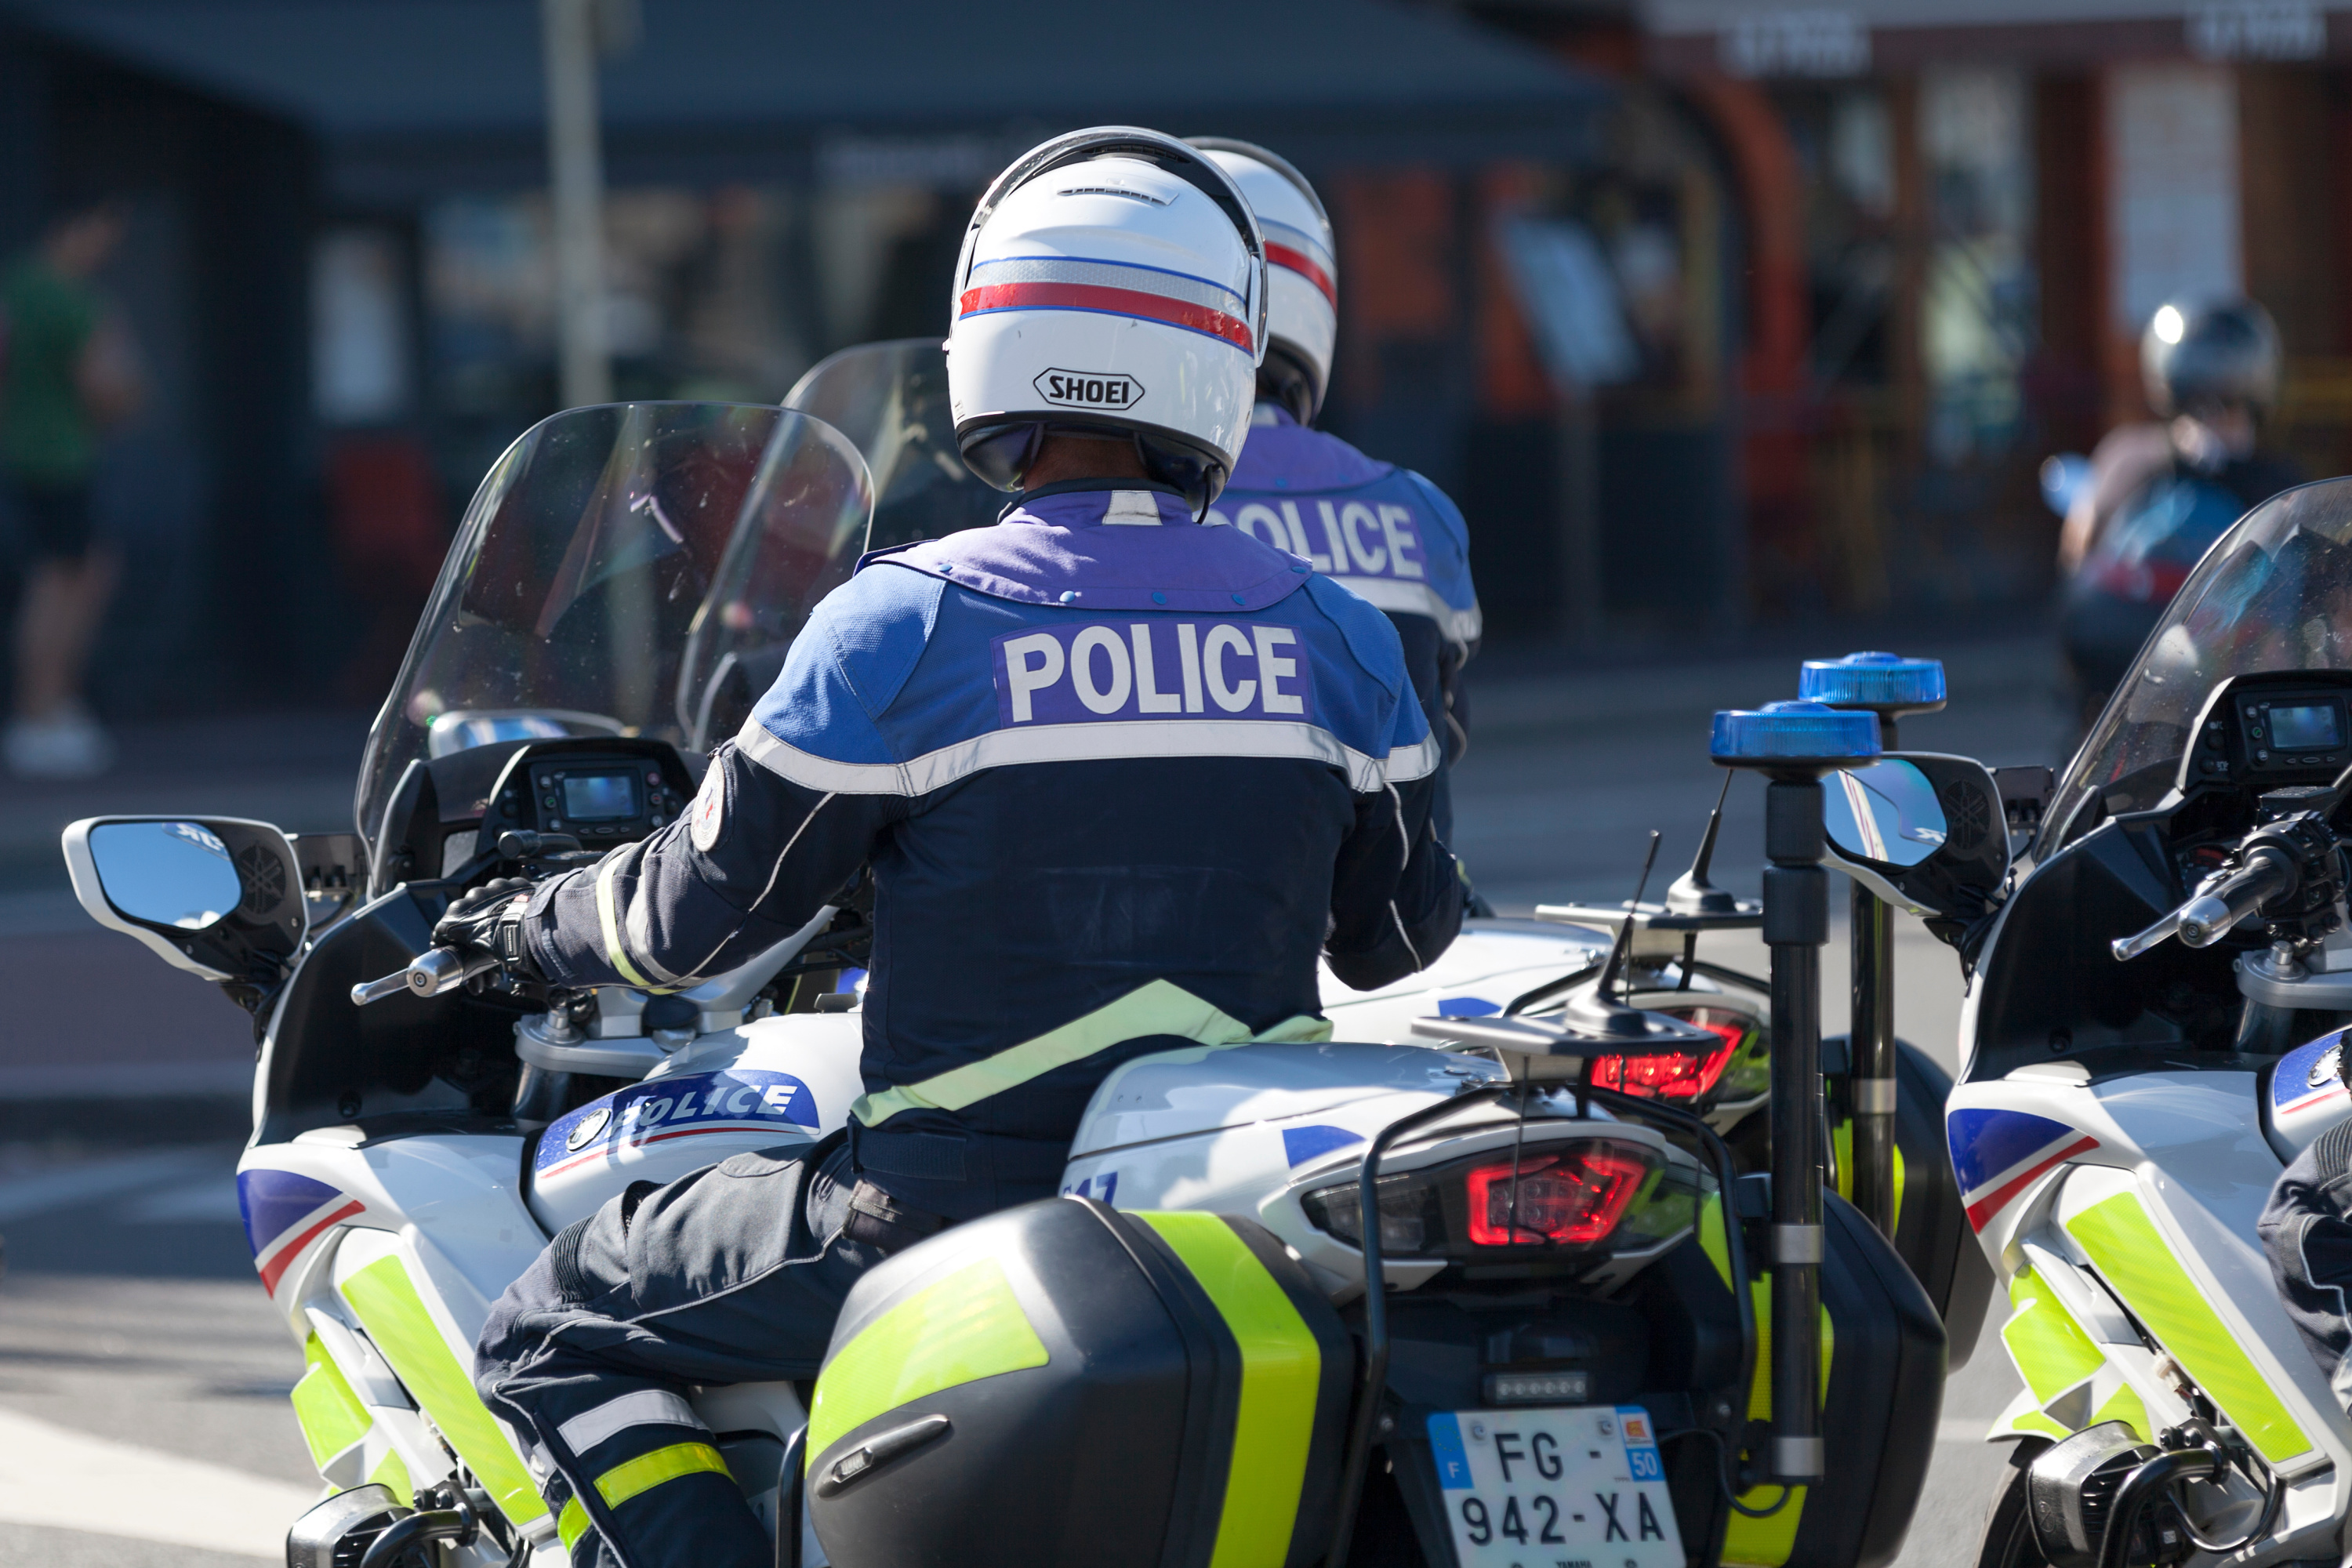 Décès en garde à vue à Saint-Malo : le parquet veut faire juger quatre policiers pour homicide involontaire